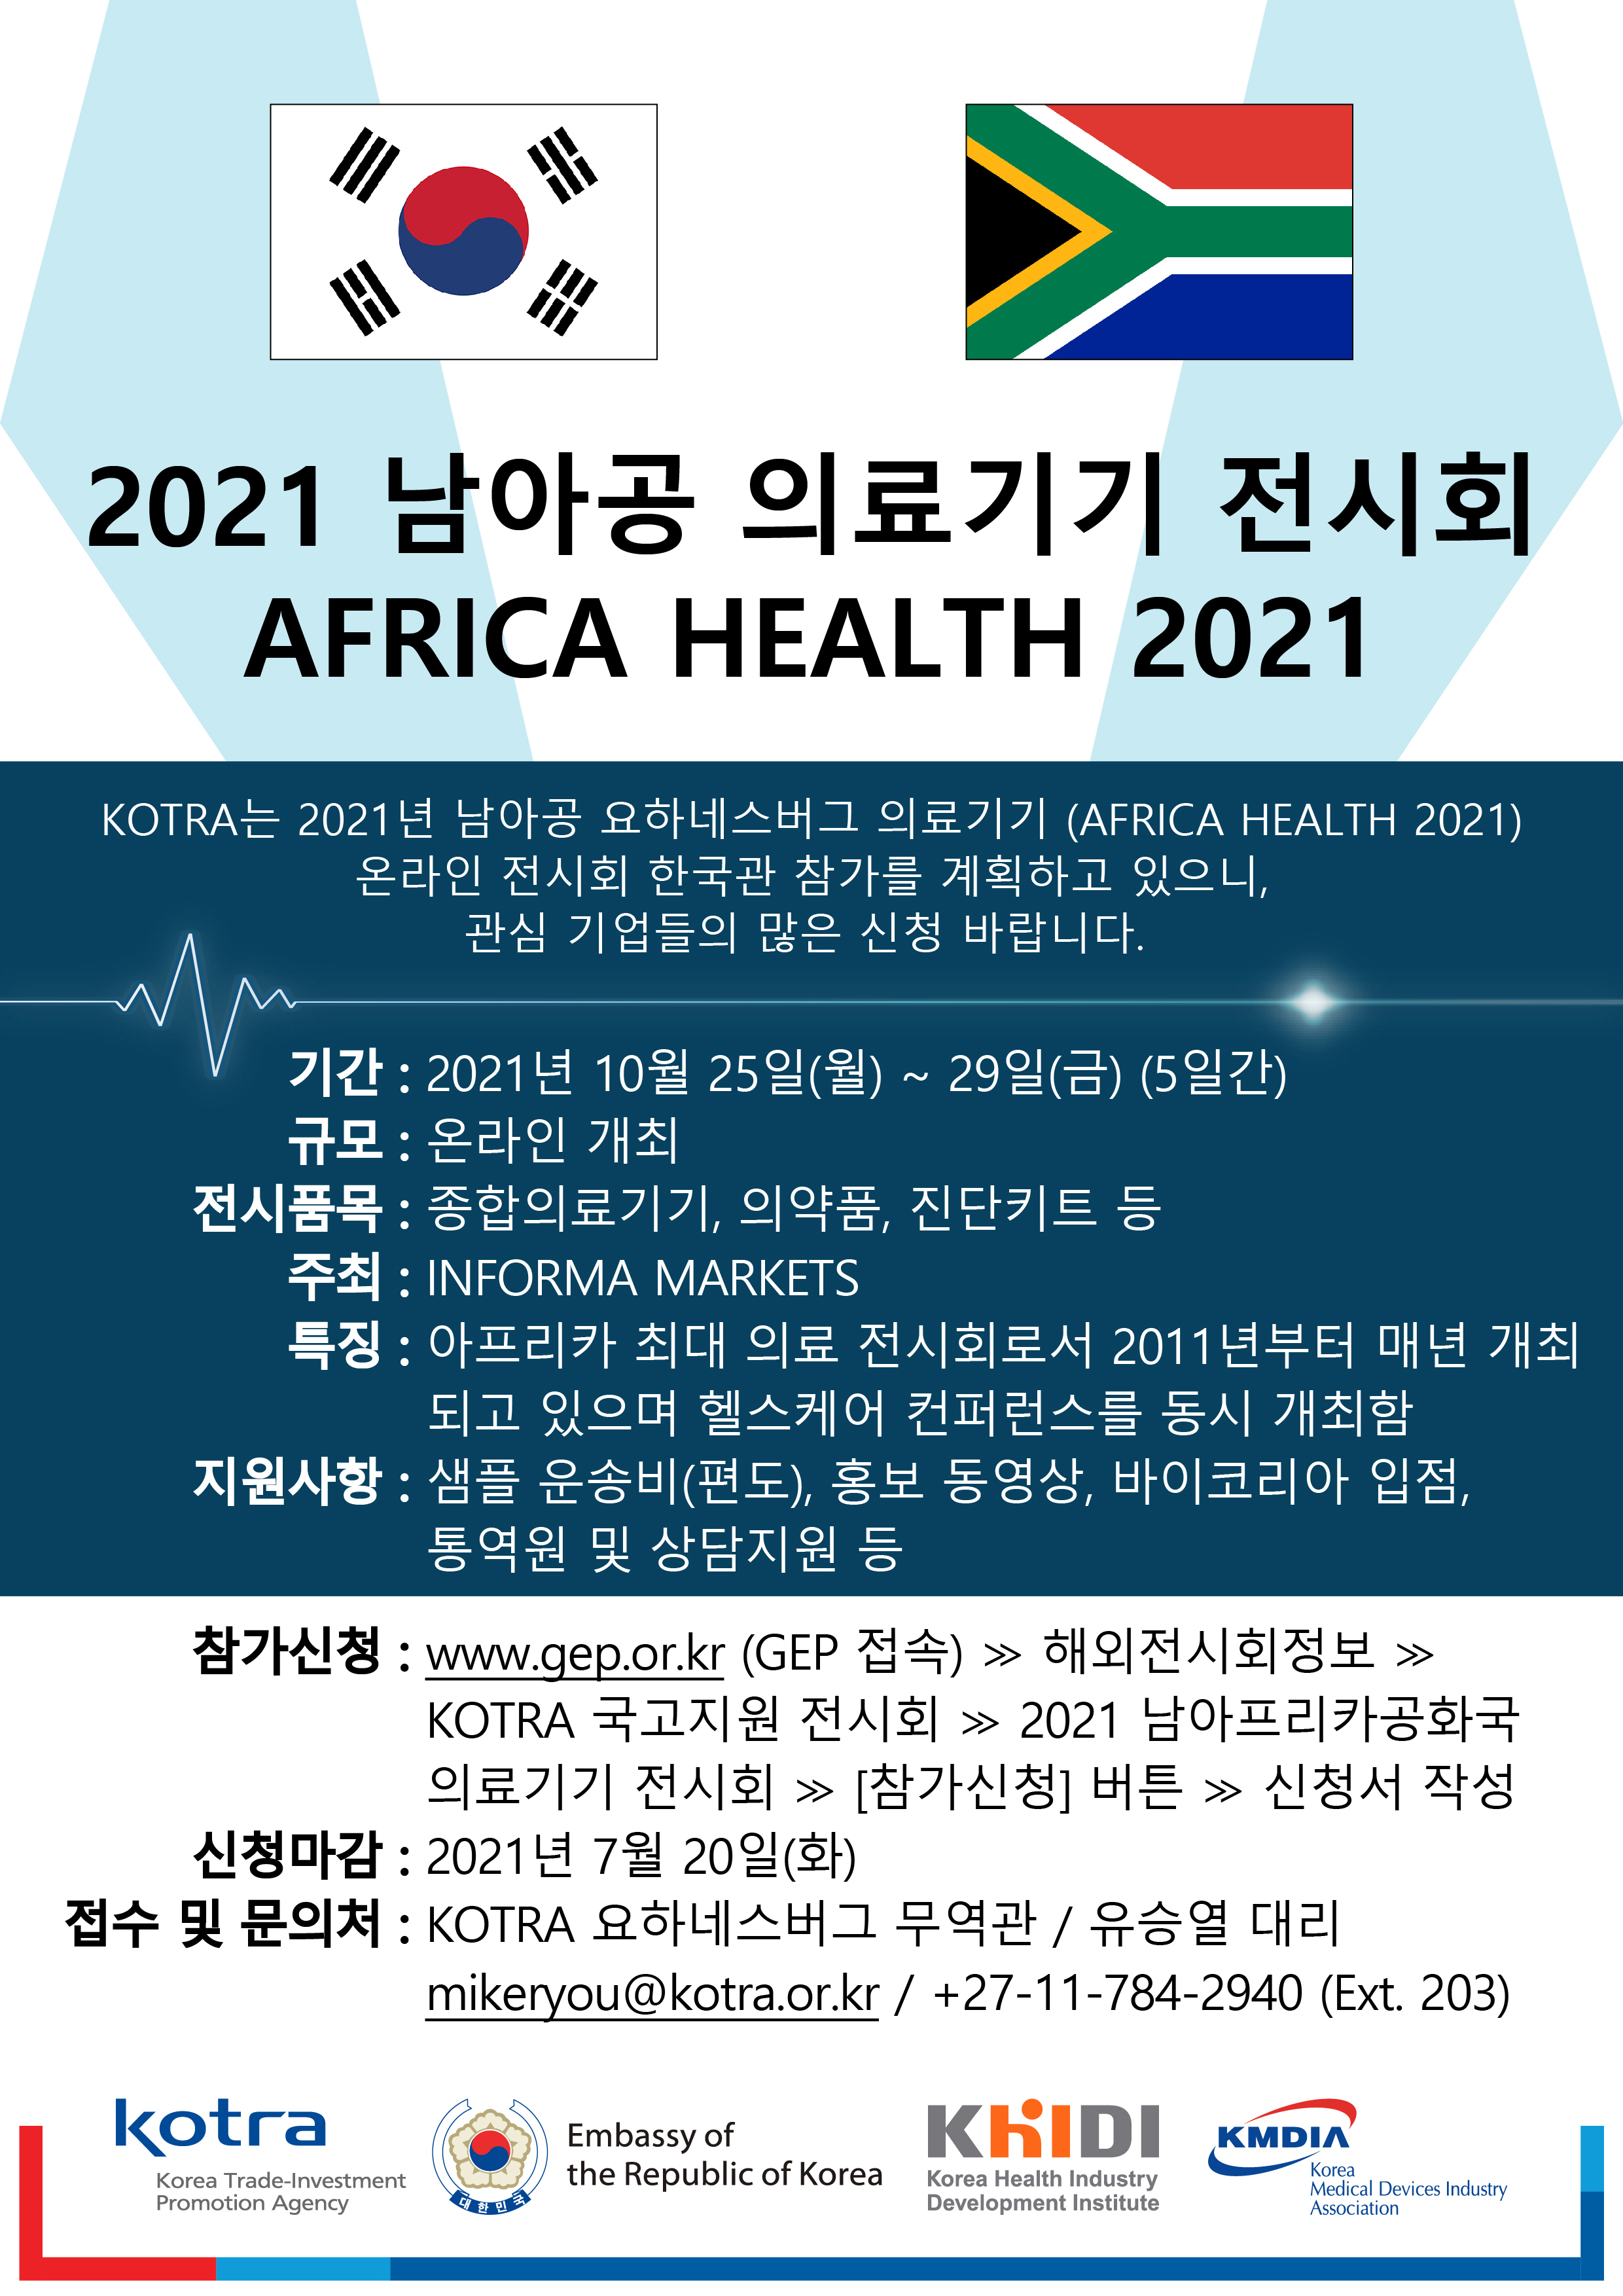 KOTRA는 2021년 남아공 요하네스버그 의료기기(AFRICA HEALTH 2021) 온라인 전시회 한국관 참가를 계획하고 있으니, 관심 기업들의 많은 신청 바랍니다. 자세한 내용은 첨부된 파일을 다운받아 확인해 주세요.